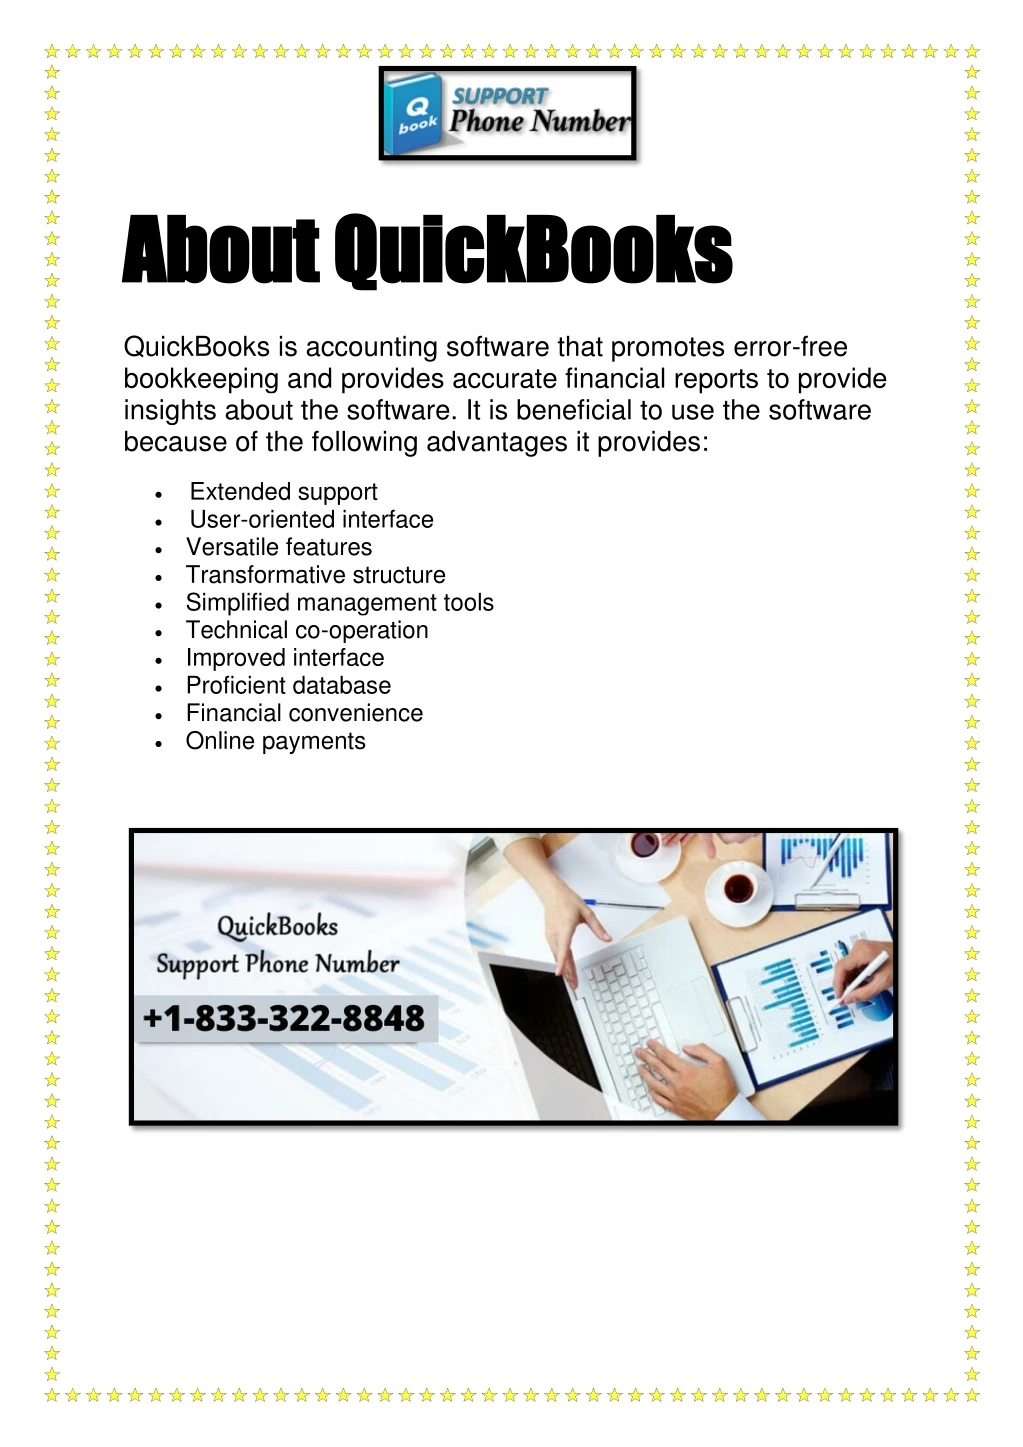 about quickbooks about quickbooks quickbooks